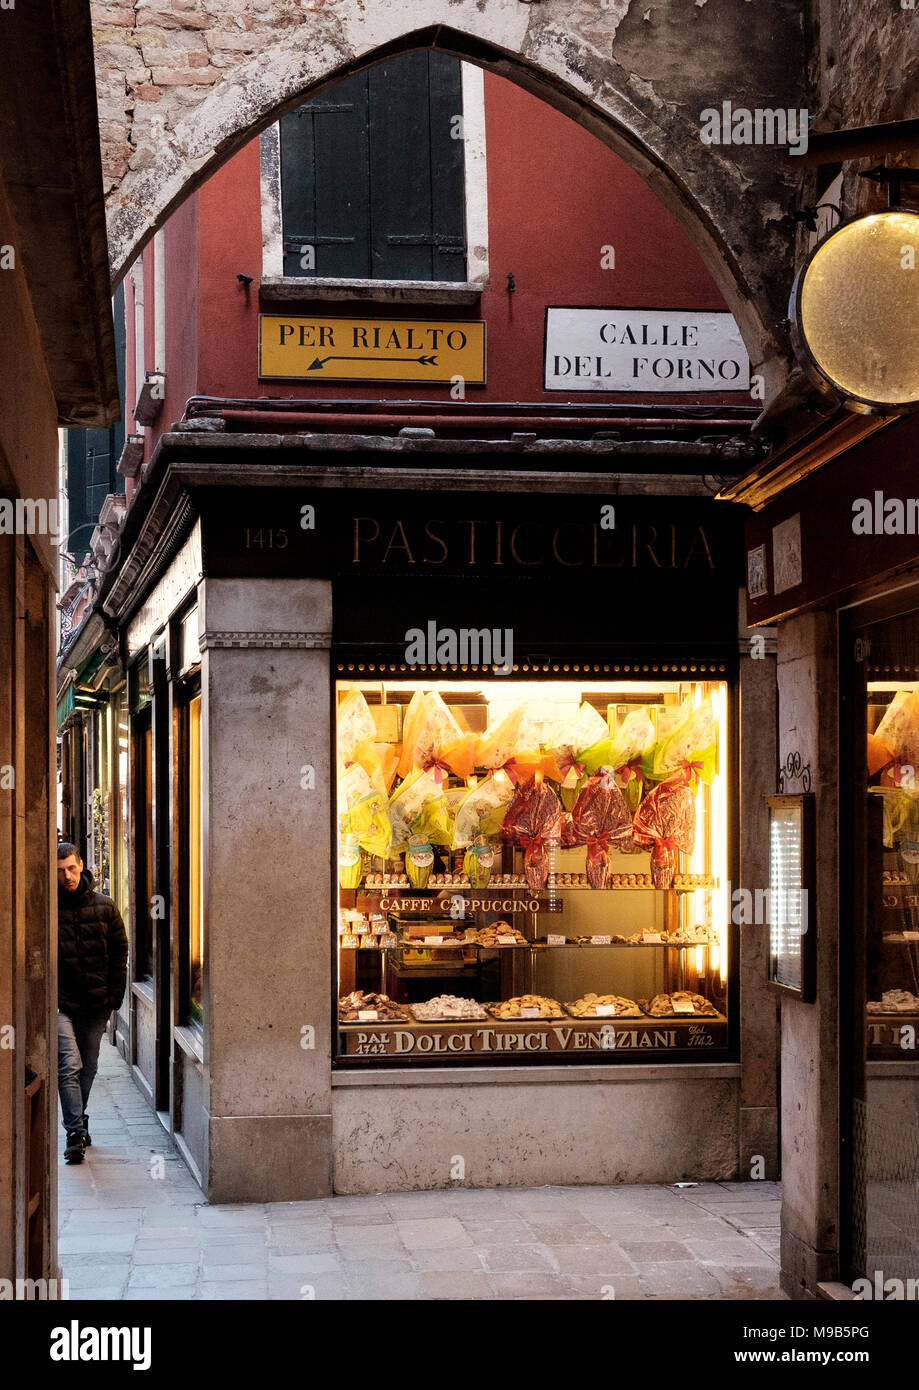 The arch is on Calle de Meloni. The Pasticceria on Calle de Forno, San  Polo, Venice Stock Photo - Alamy